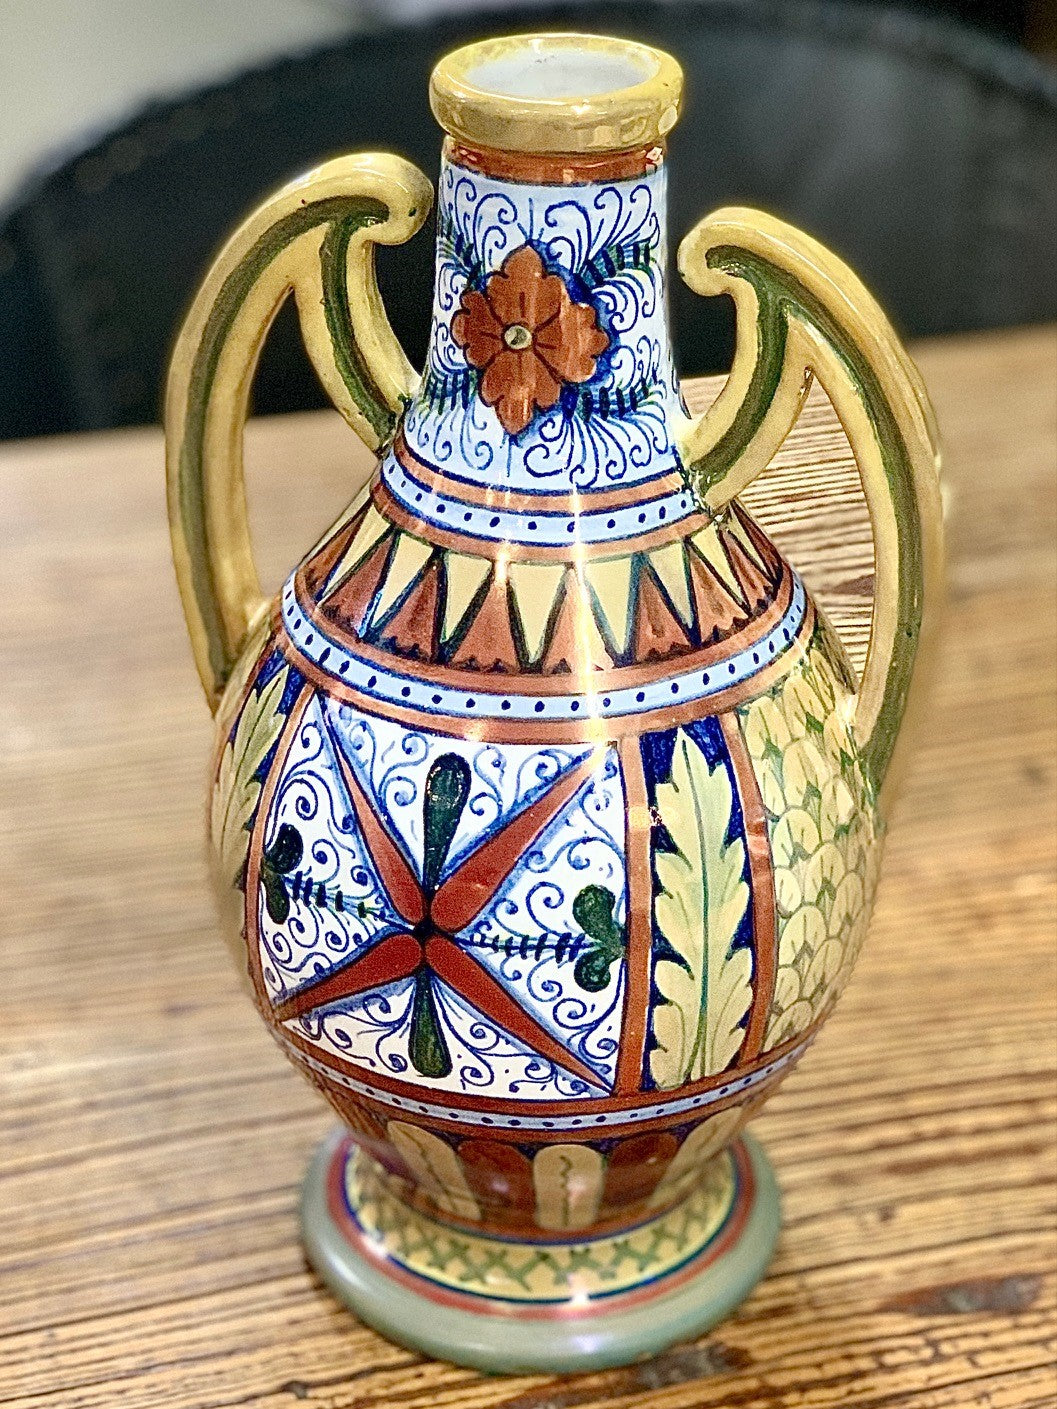 Antique Majolica vase by Societa Ceramica for Paolo Rubboli - 1920's